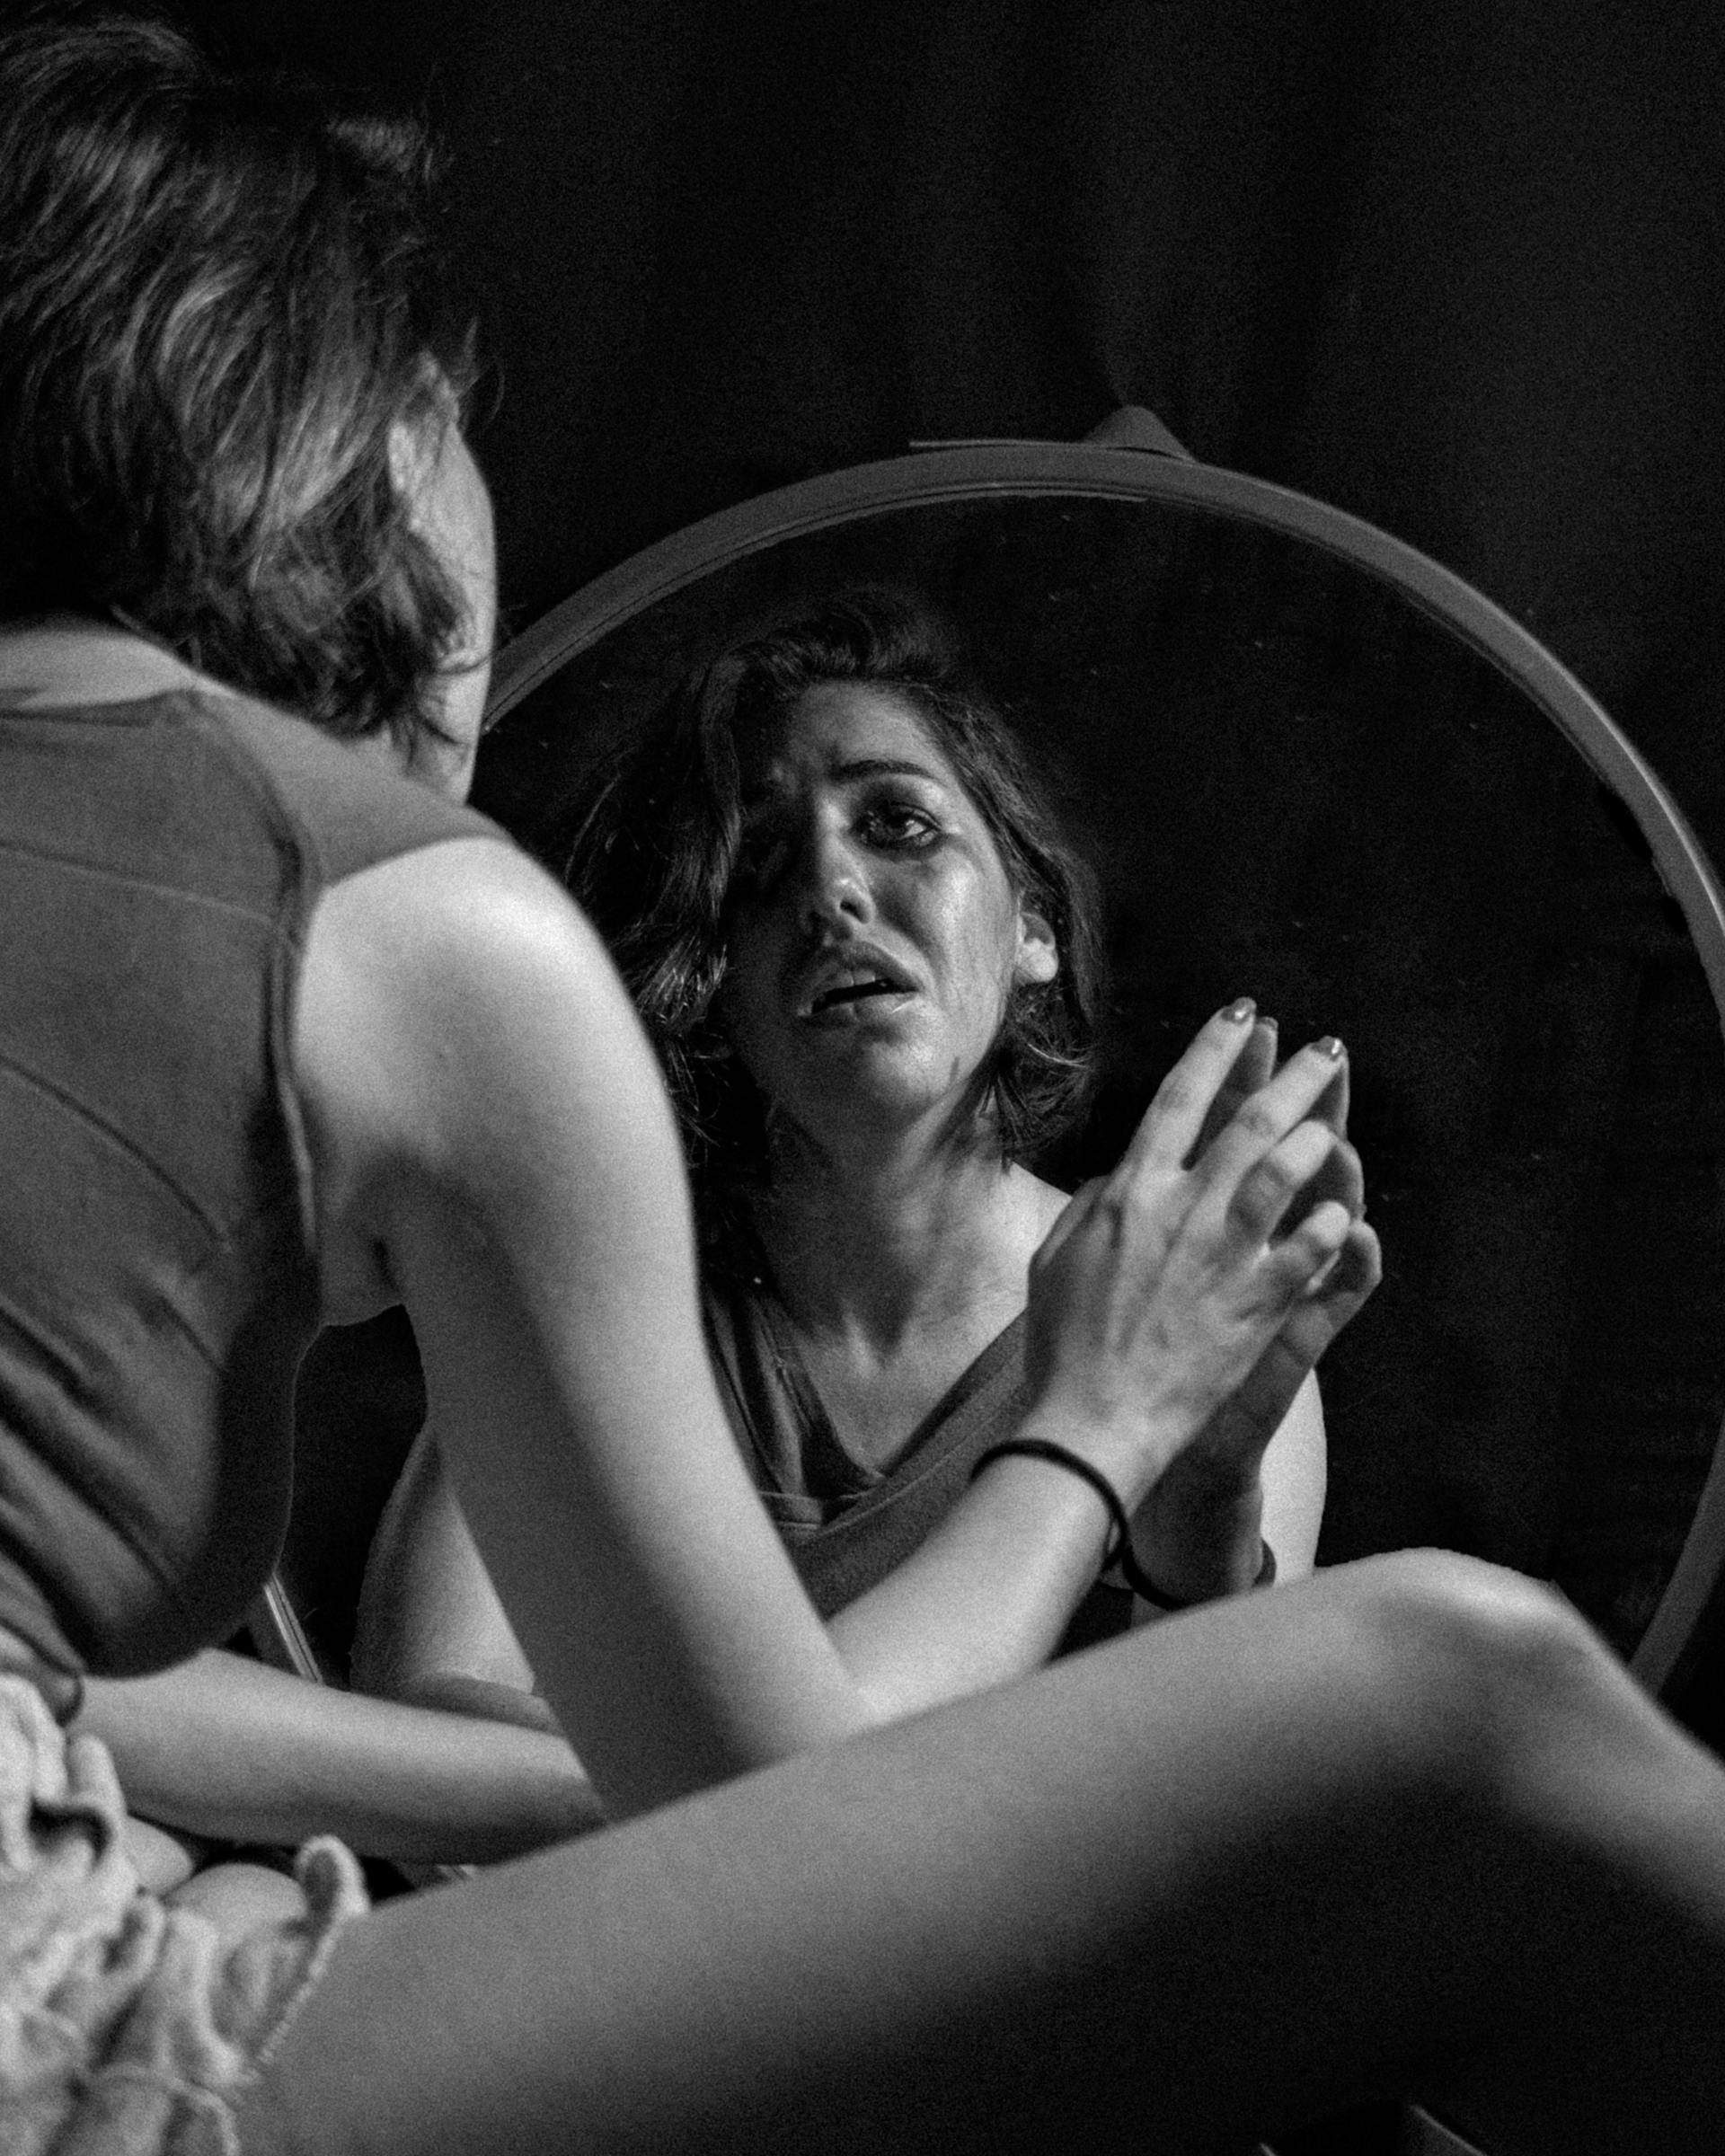 Ein Graustufenfoto von einer weinenden Frau, die in den Spiegel schaut | Quelle: Pexels